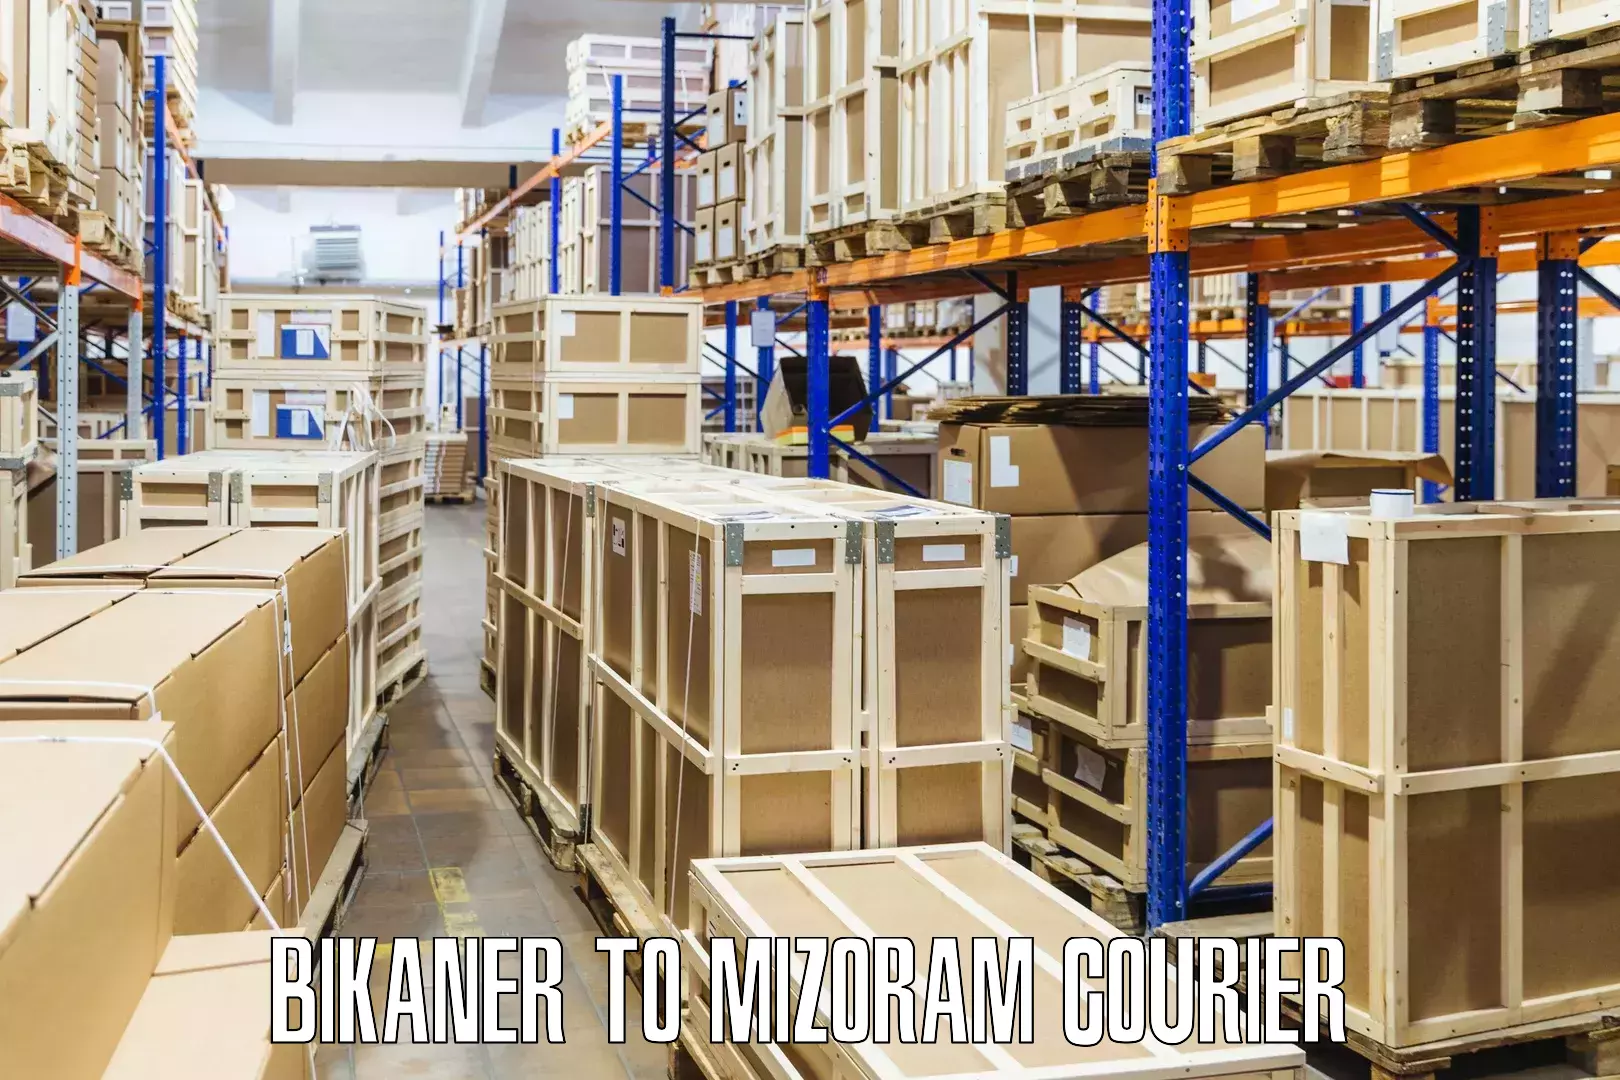 Courier app Bikaner to Darlawn